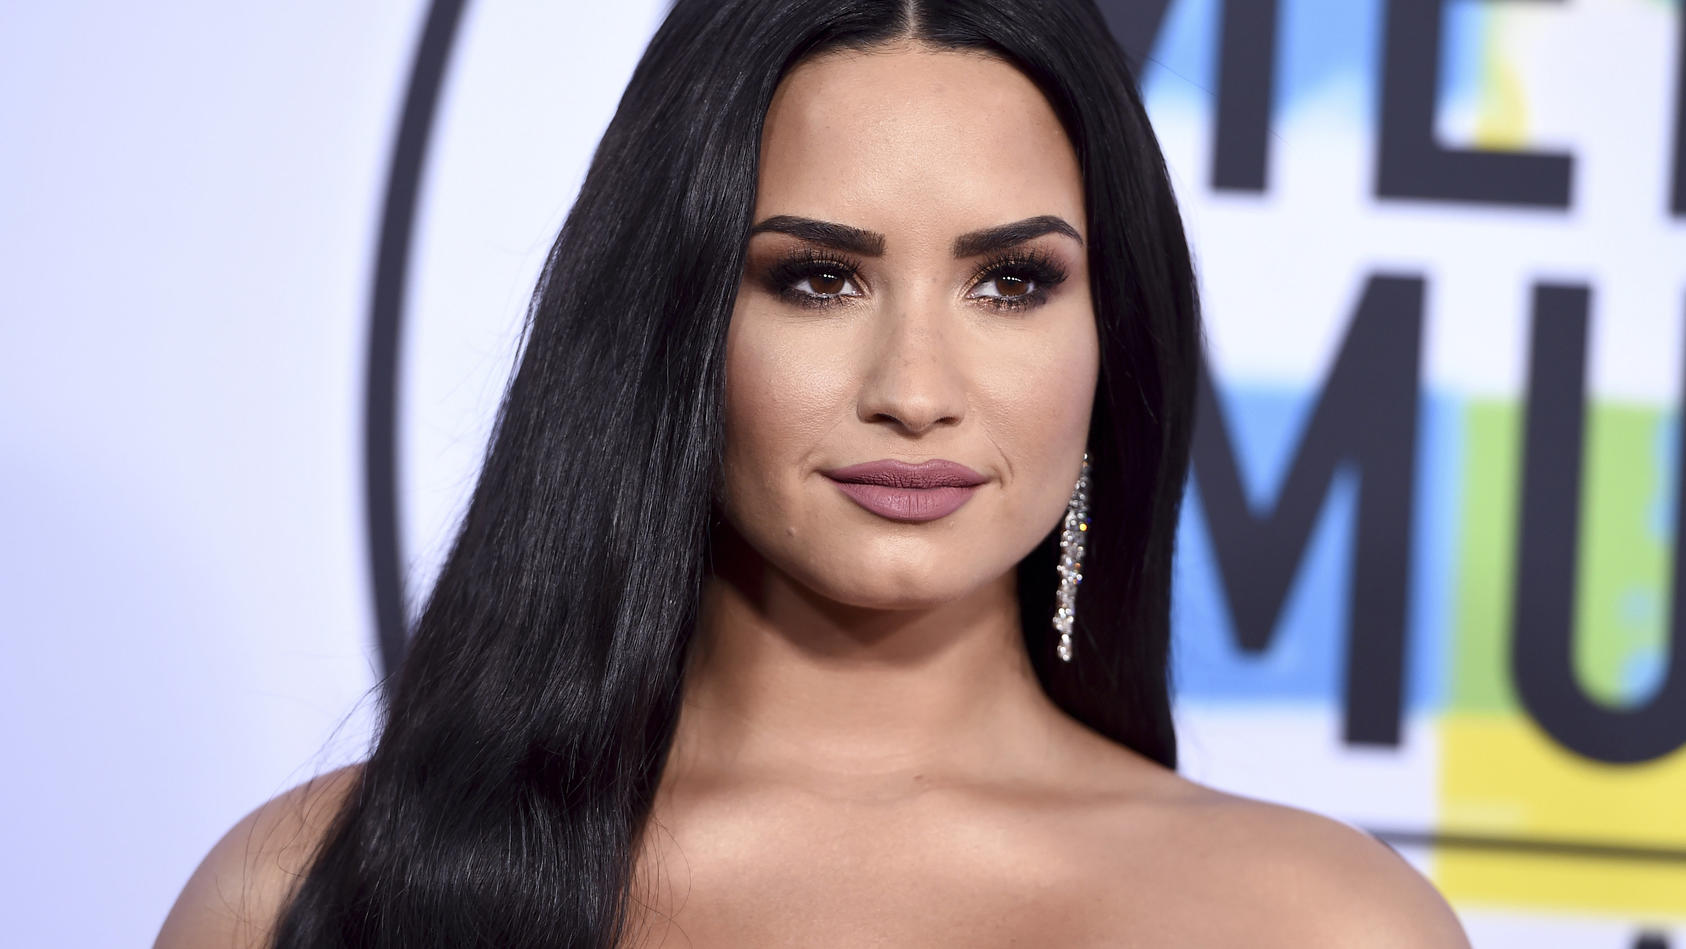 ARCHIV - 19.11.2017, USA, Los Angeles: Demi Lovato kommt zur Verleihung der American Music Awards. (zu dpa «Demi Lovato nach Entzug: «Dankbar, dass ich am Leben bin»» vom 22.12.2018) Foto: Jordan Strauss/Invision/AP/dpa +++ dpa-Bildfunk +++